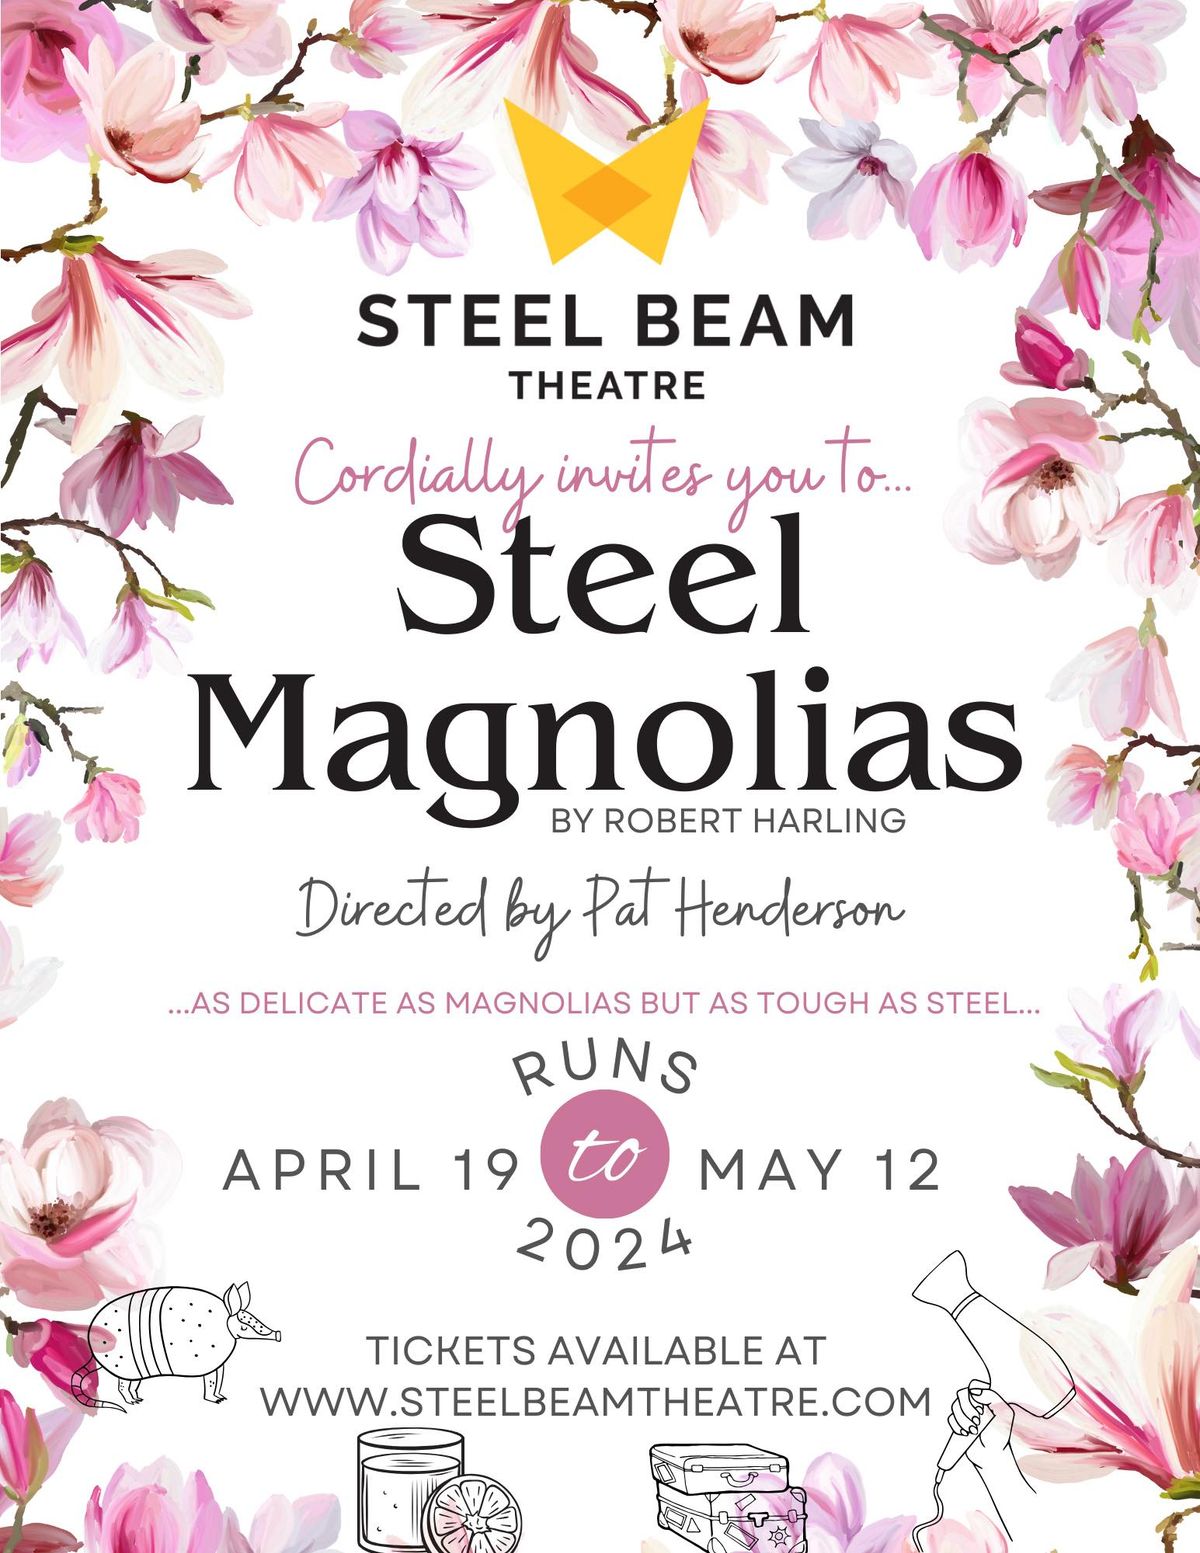 Steel Magnolias at Steel Beam Theatre